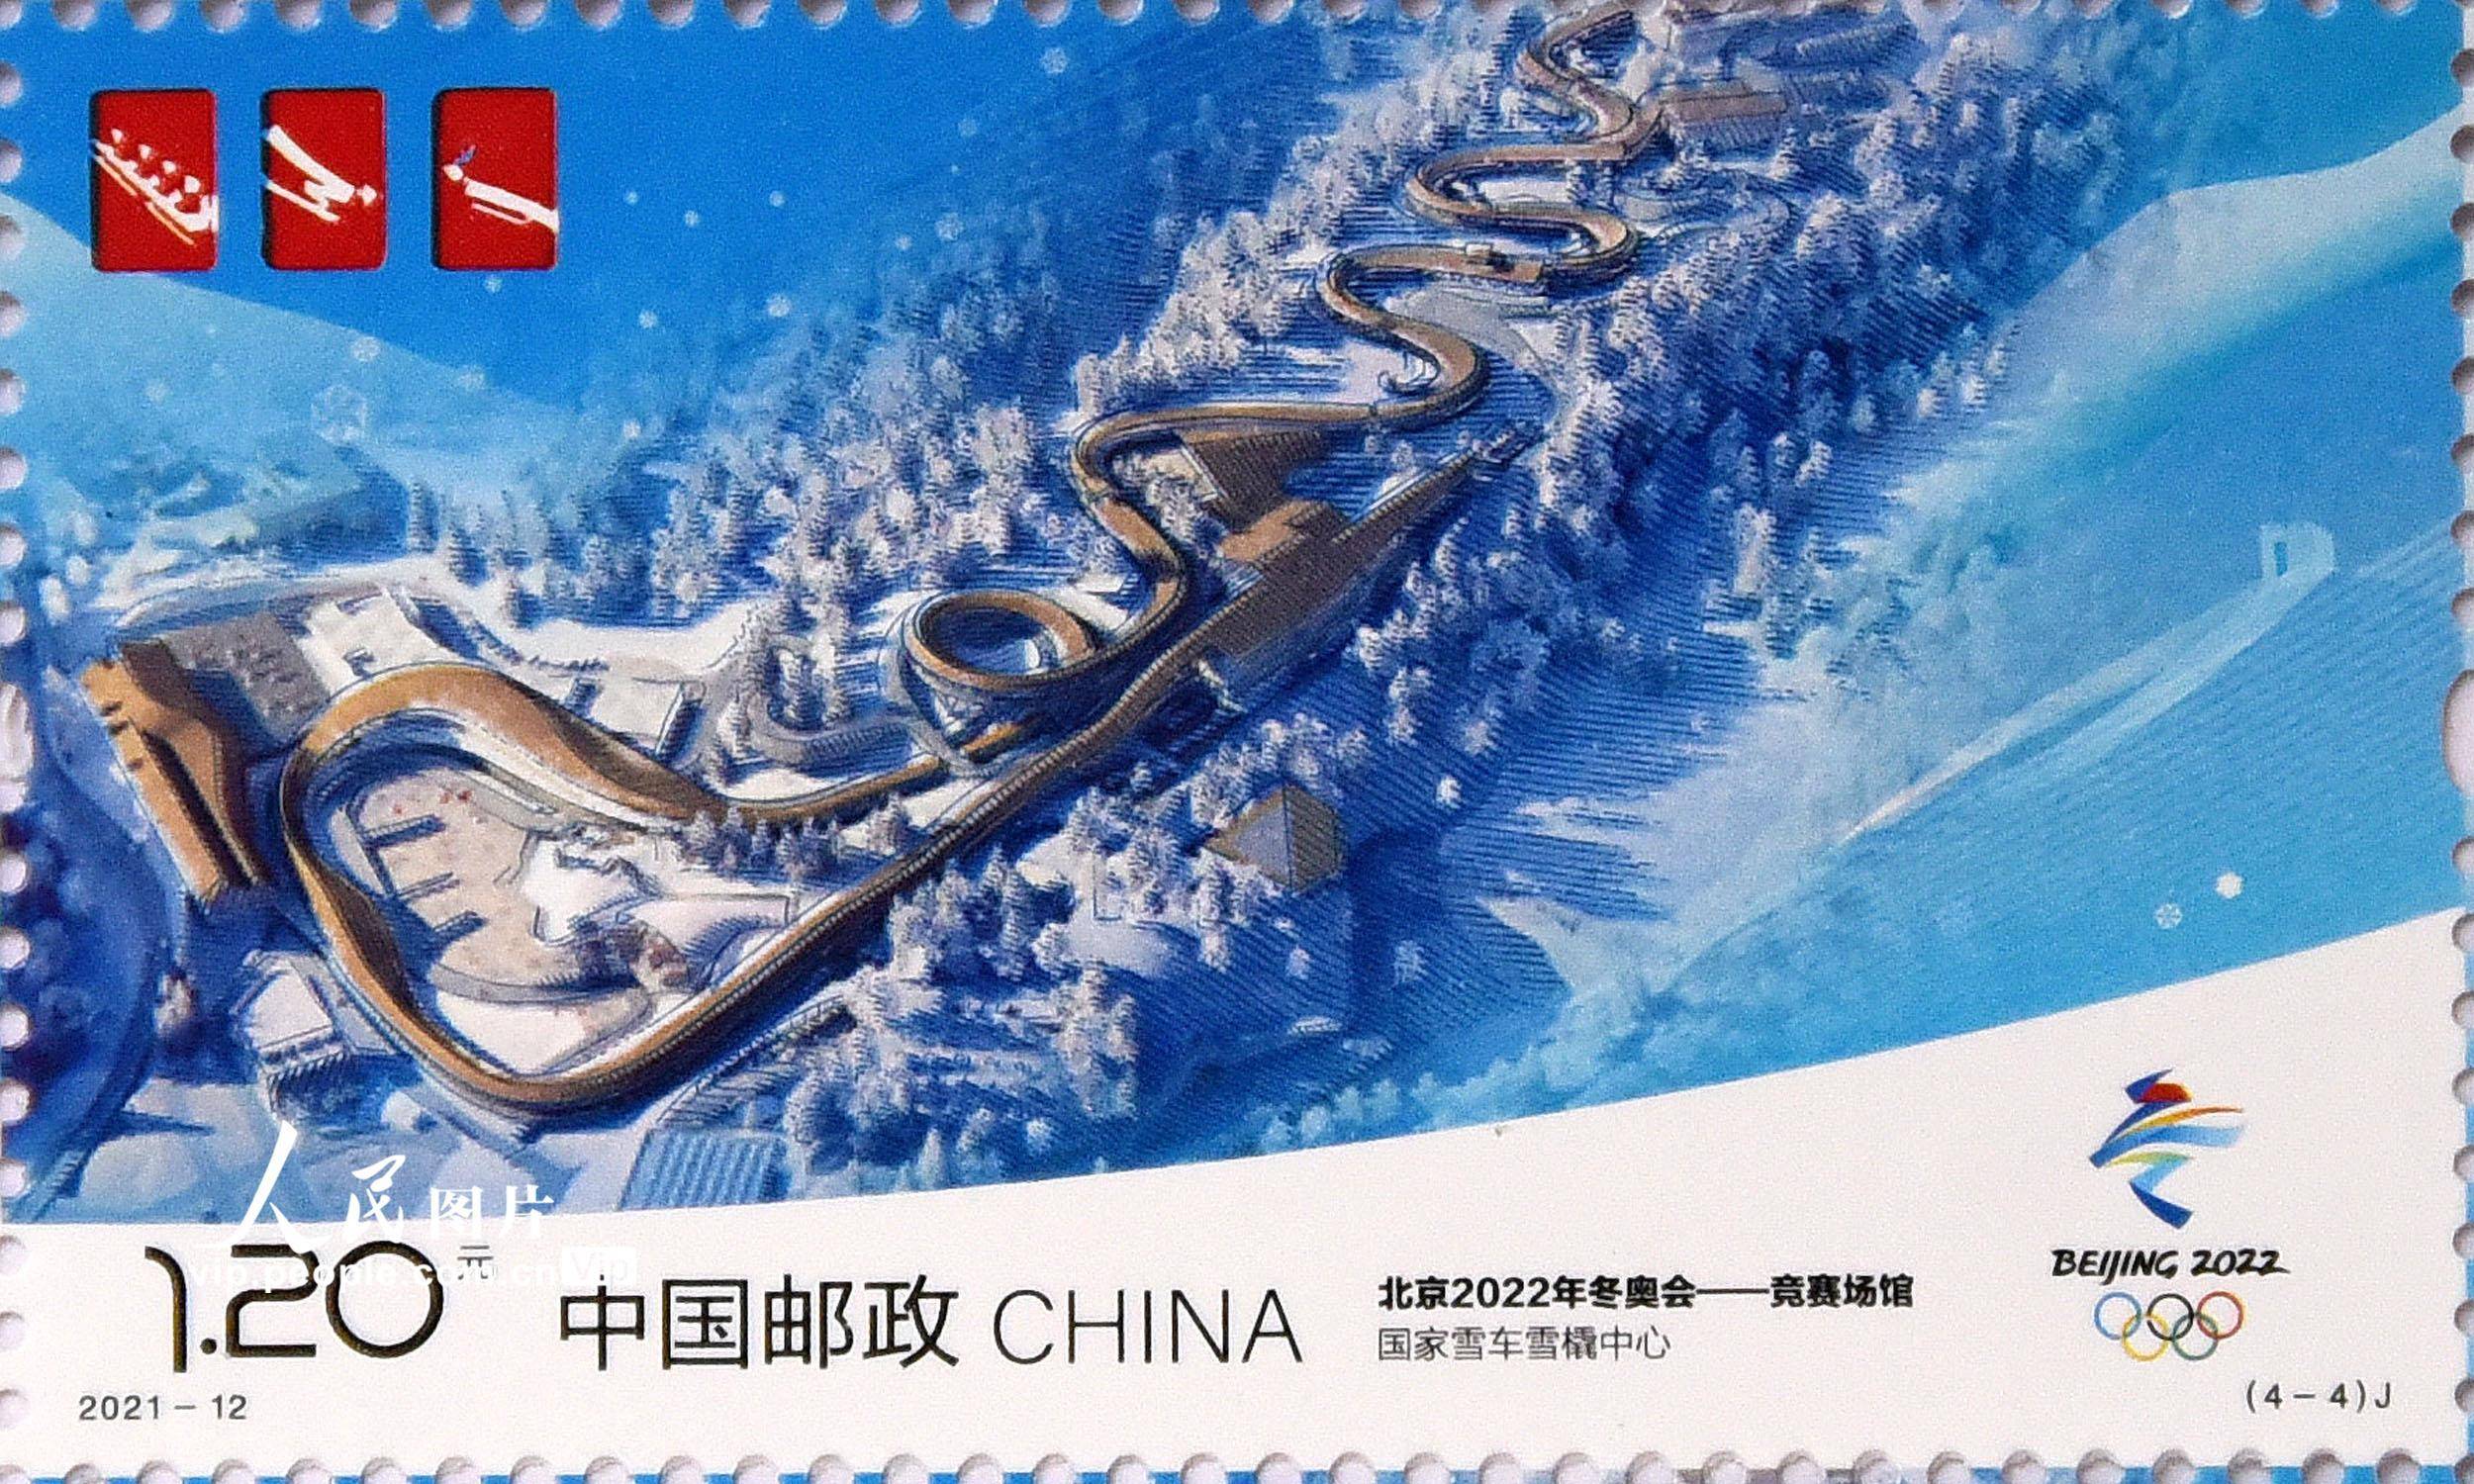 《北京2022年冬奥会——竞赛场馆》纪念邮票发行